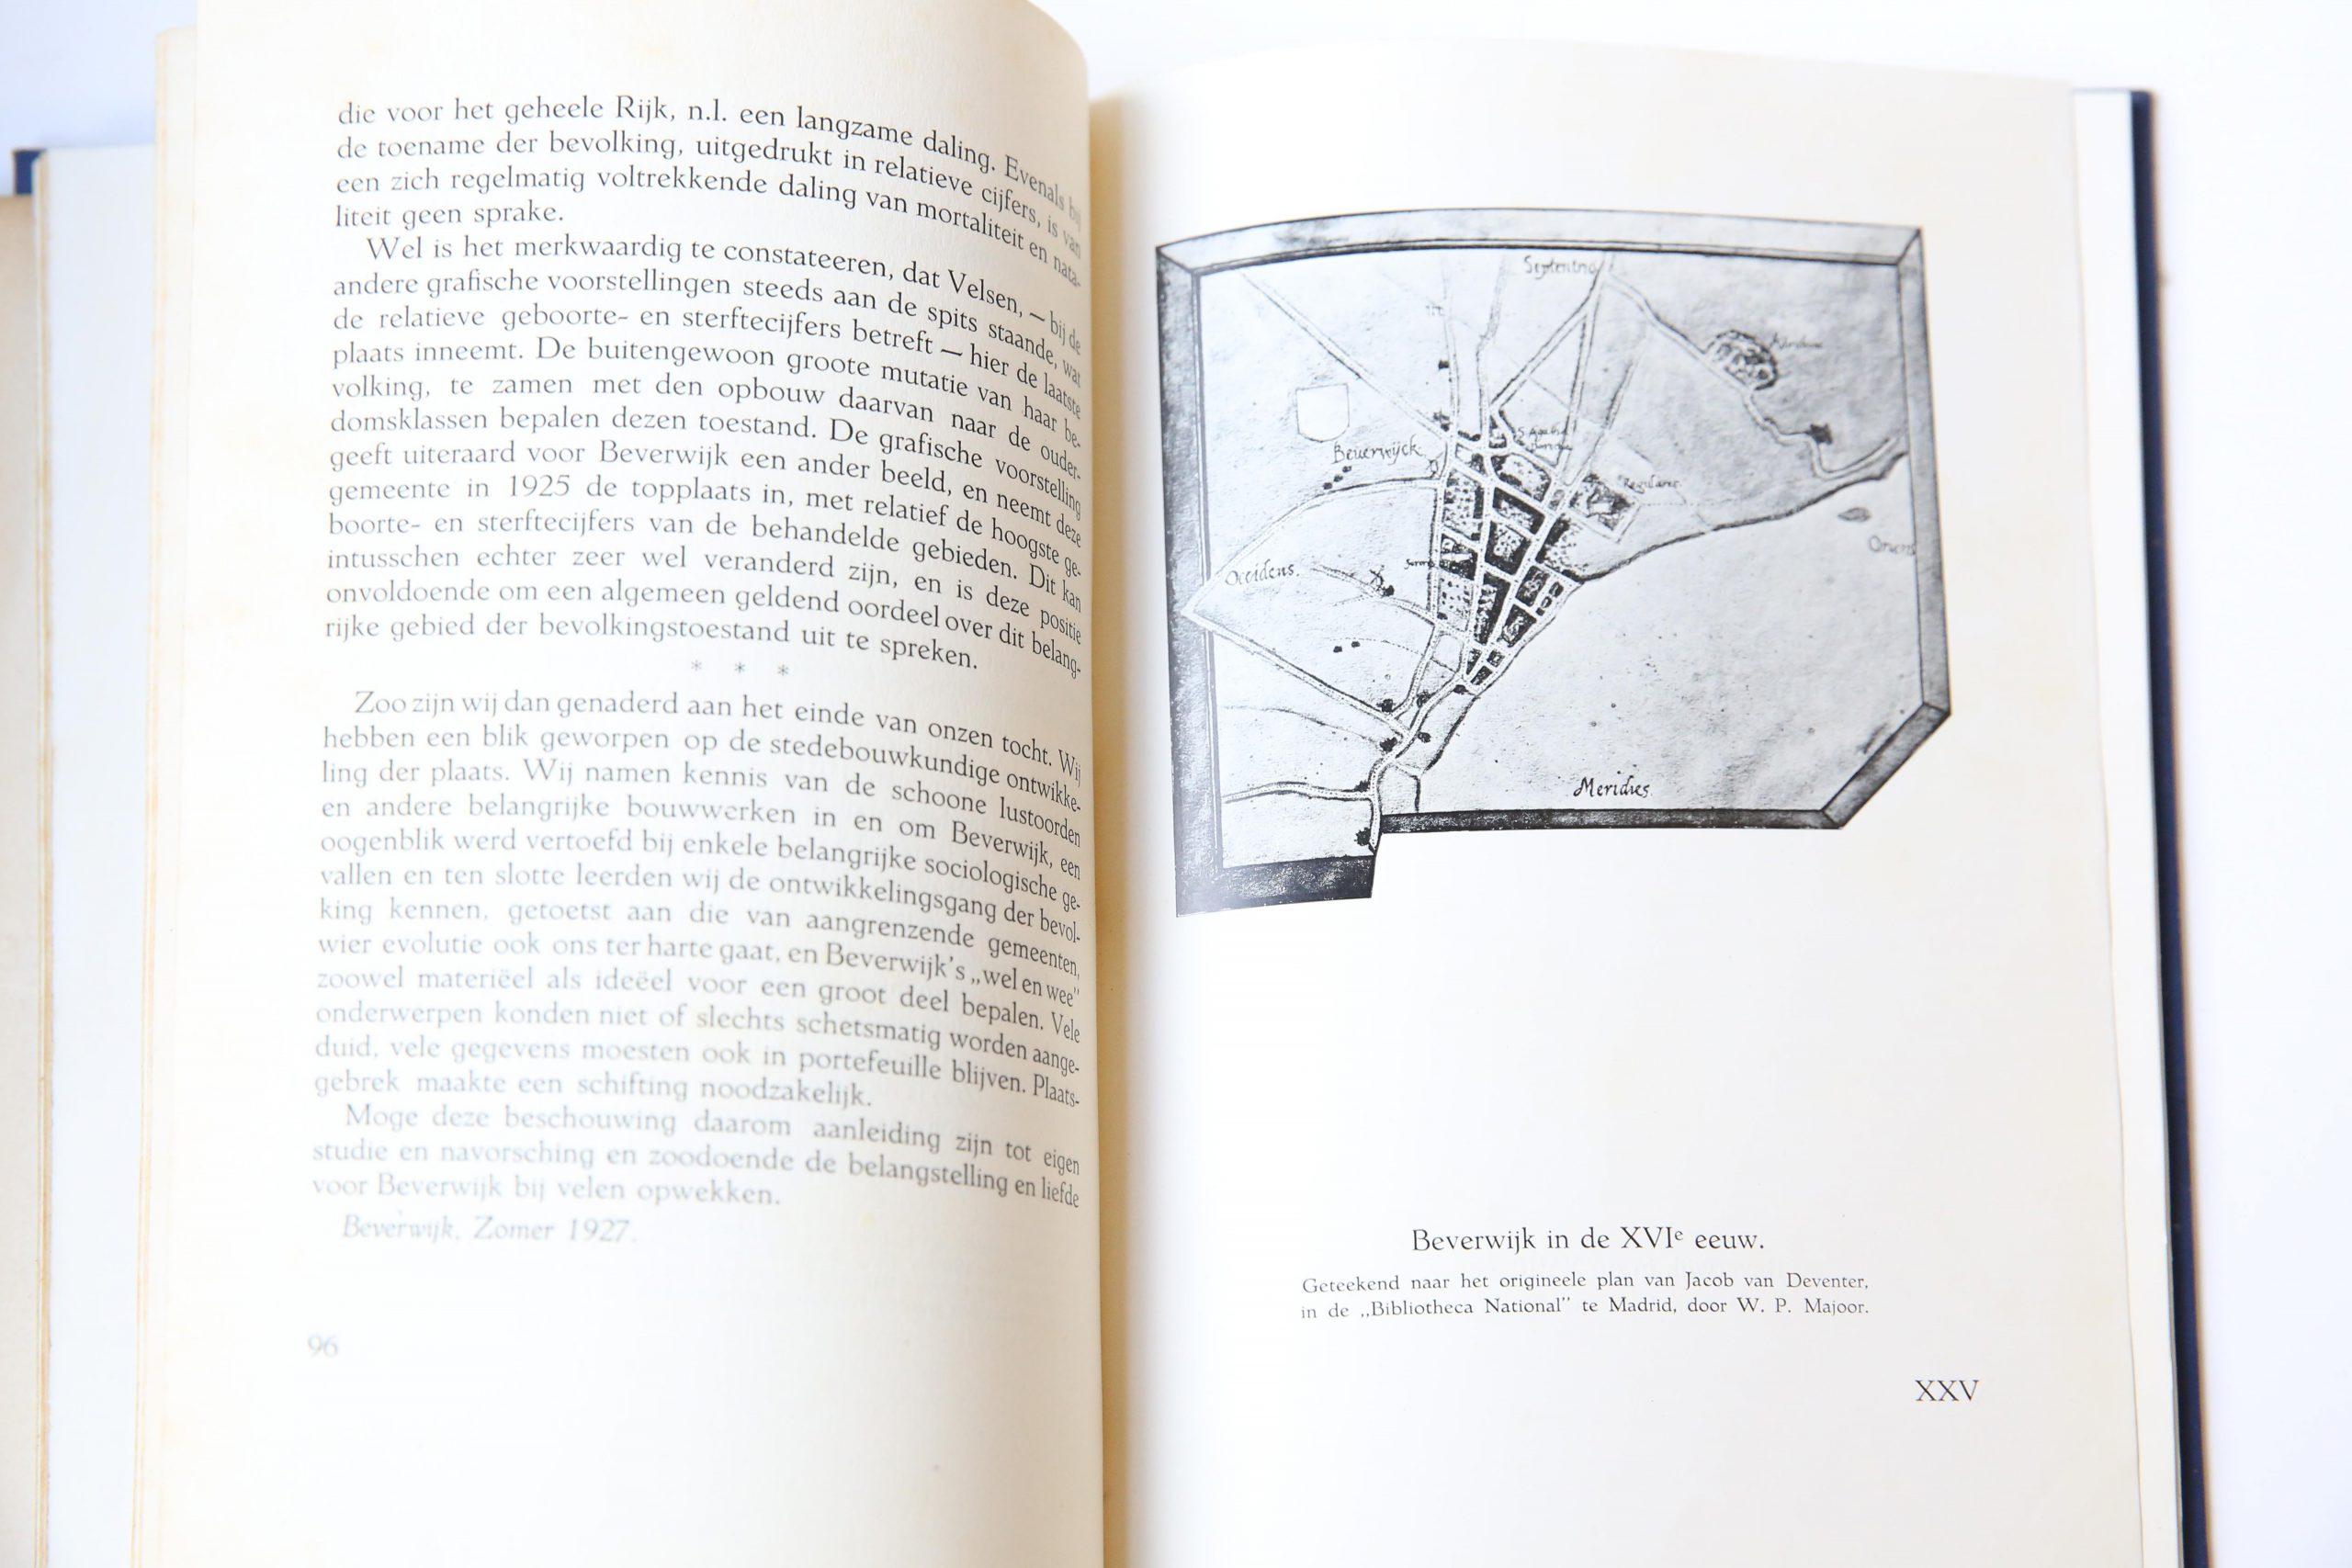 Gedenkboek van Beverwijk, Uitgegeven in opdracht van het hoofdcomité der herdenkingsfeesten in het jaar MCMXXVII (1927), 108 pp en 70 platen.